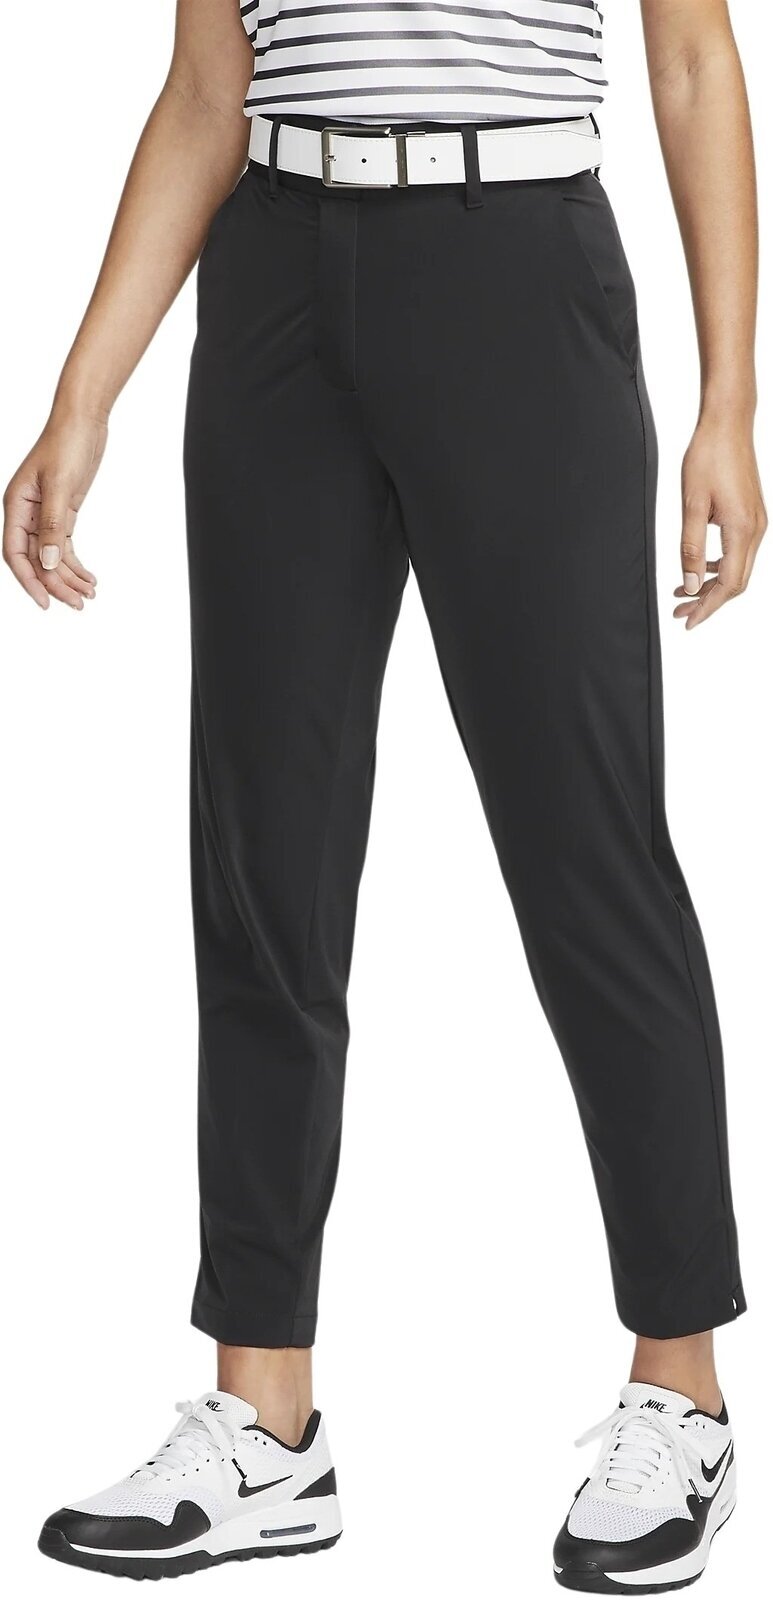 Nohavice Nike Dri-Fit Tour Womens Pants Black/White XS